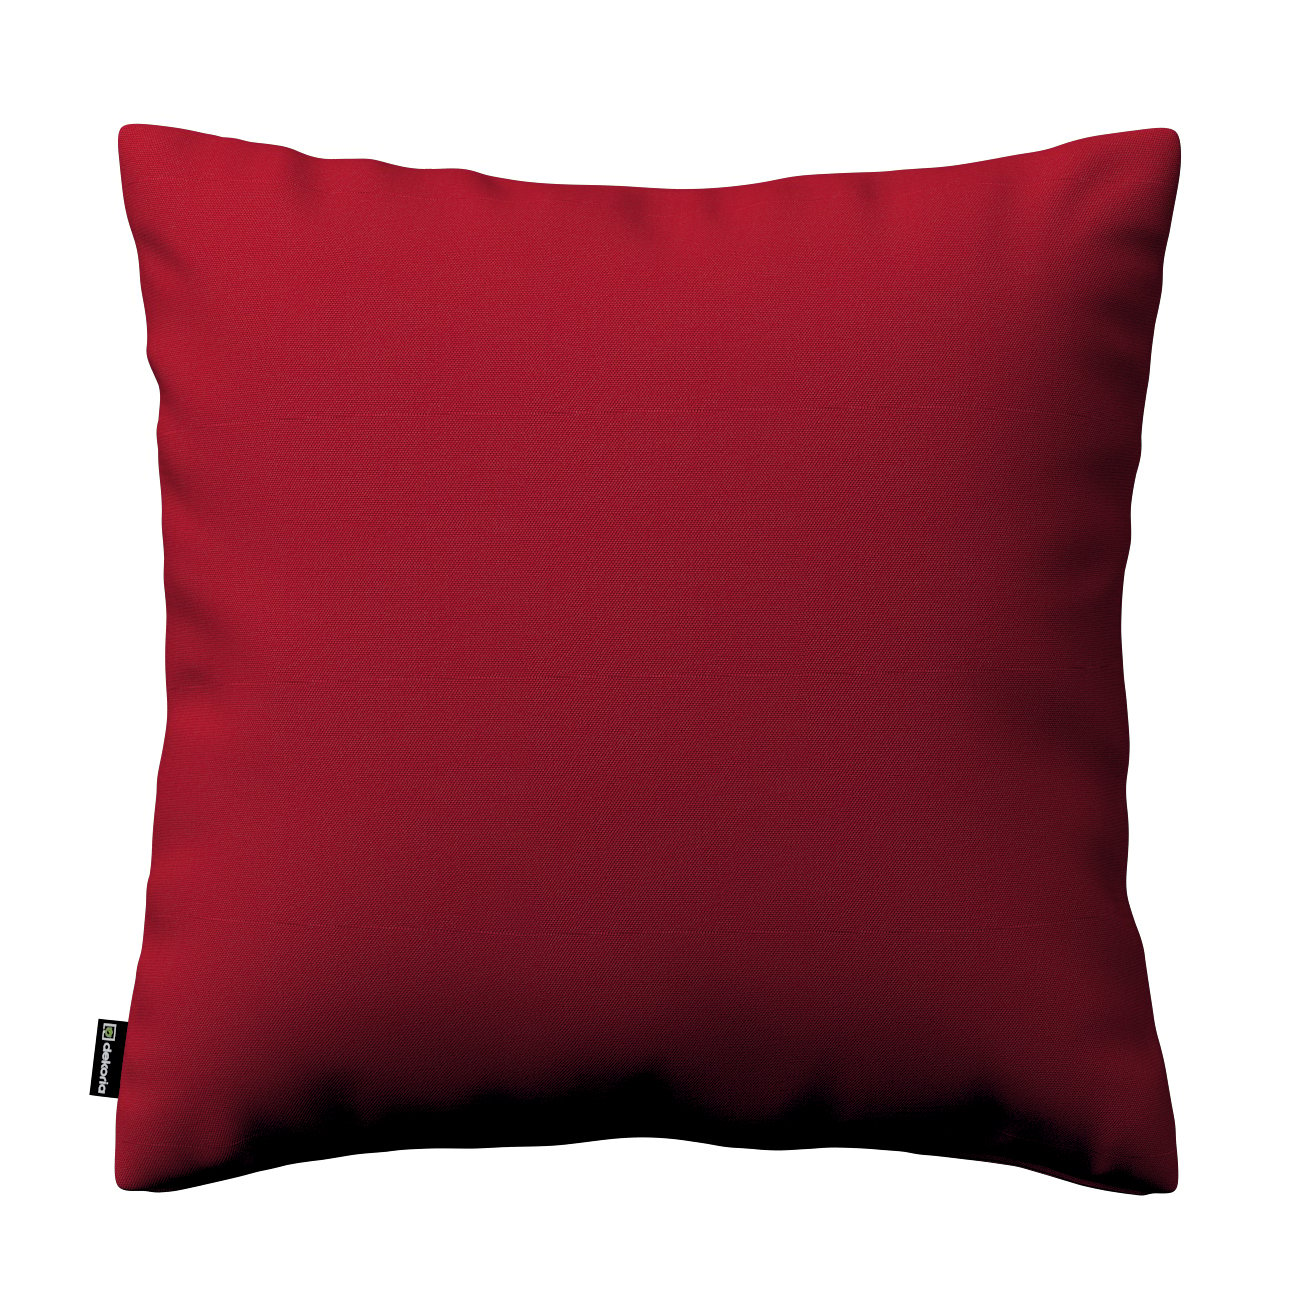 Dekoria Karin - jednoduchá obliečka, červená, 50 x 50 cm, Etna, 705-60